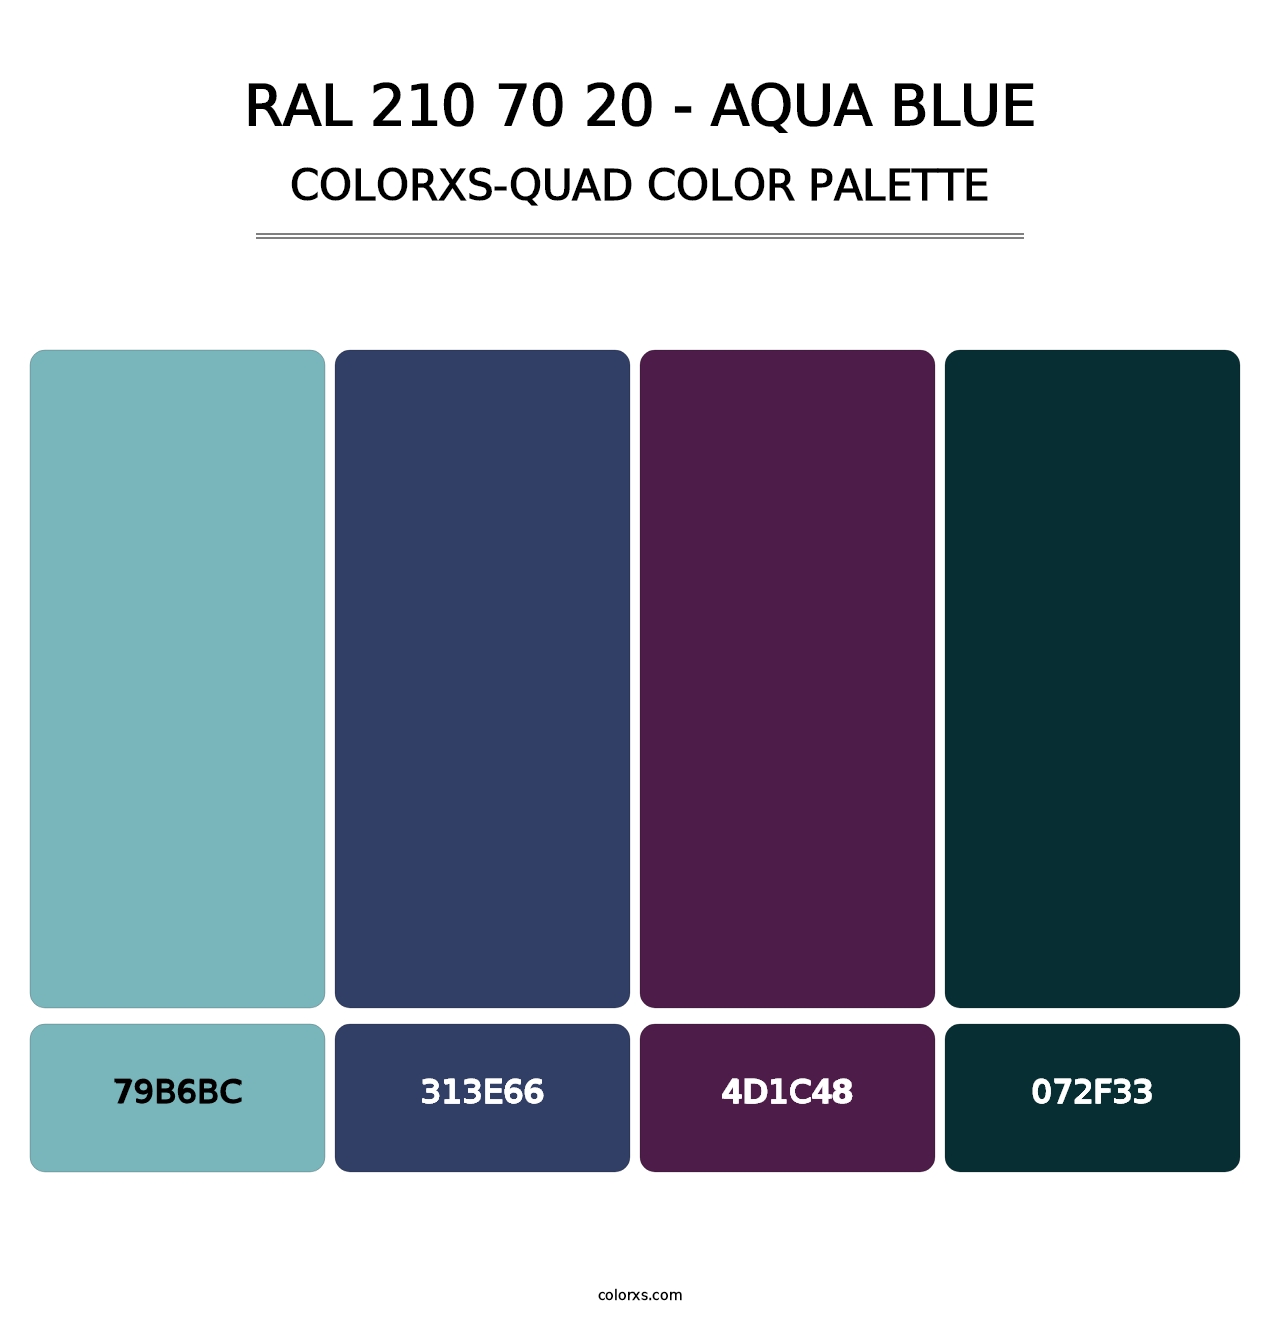 RAL 210 70 20 - Aqua Blue - Colorxs Quad Palette